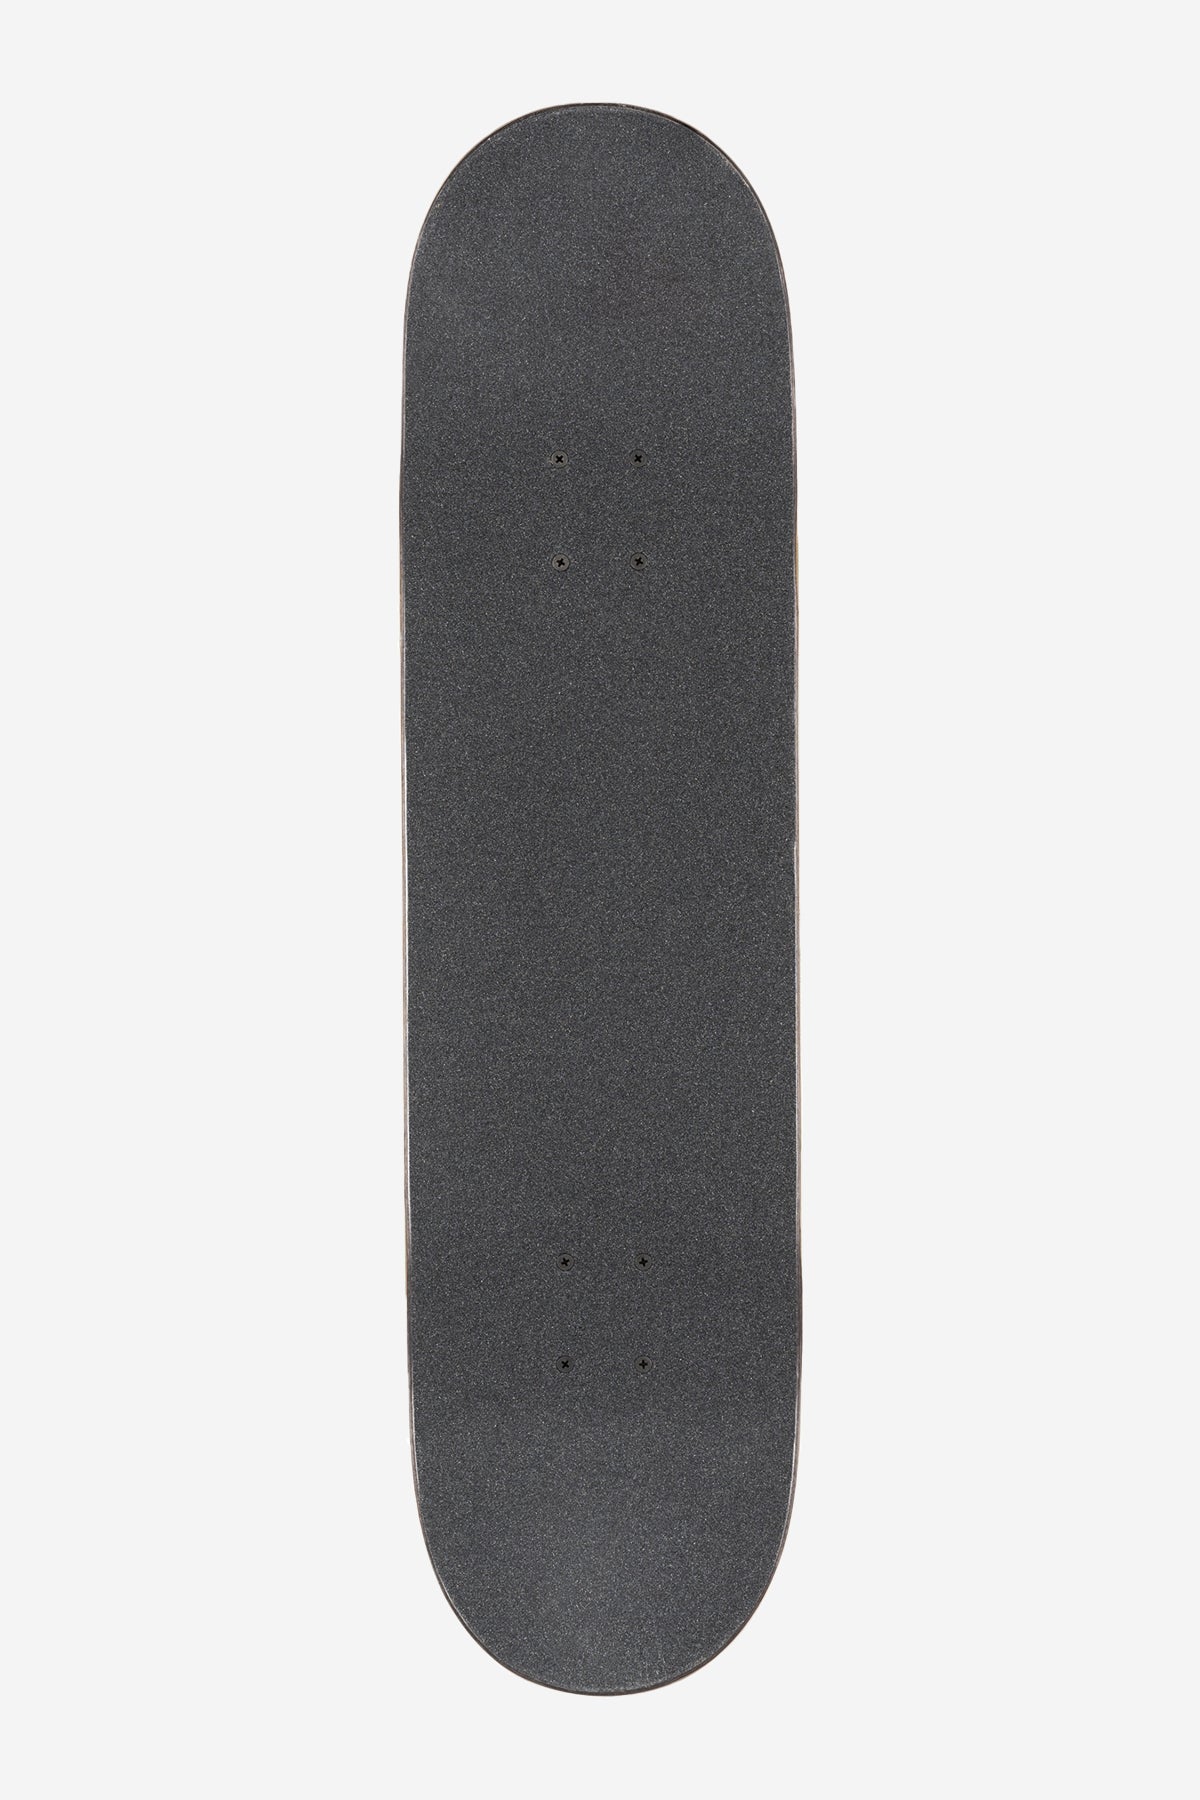 g1 supercolor black pond 8,125" compleet skateboard